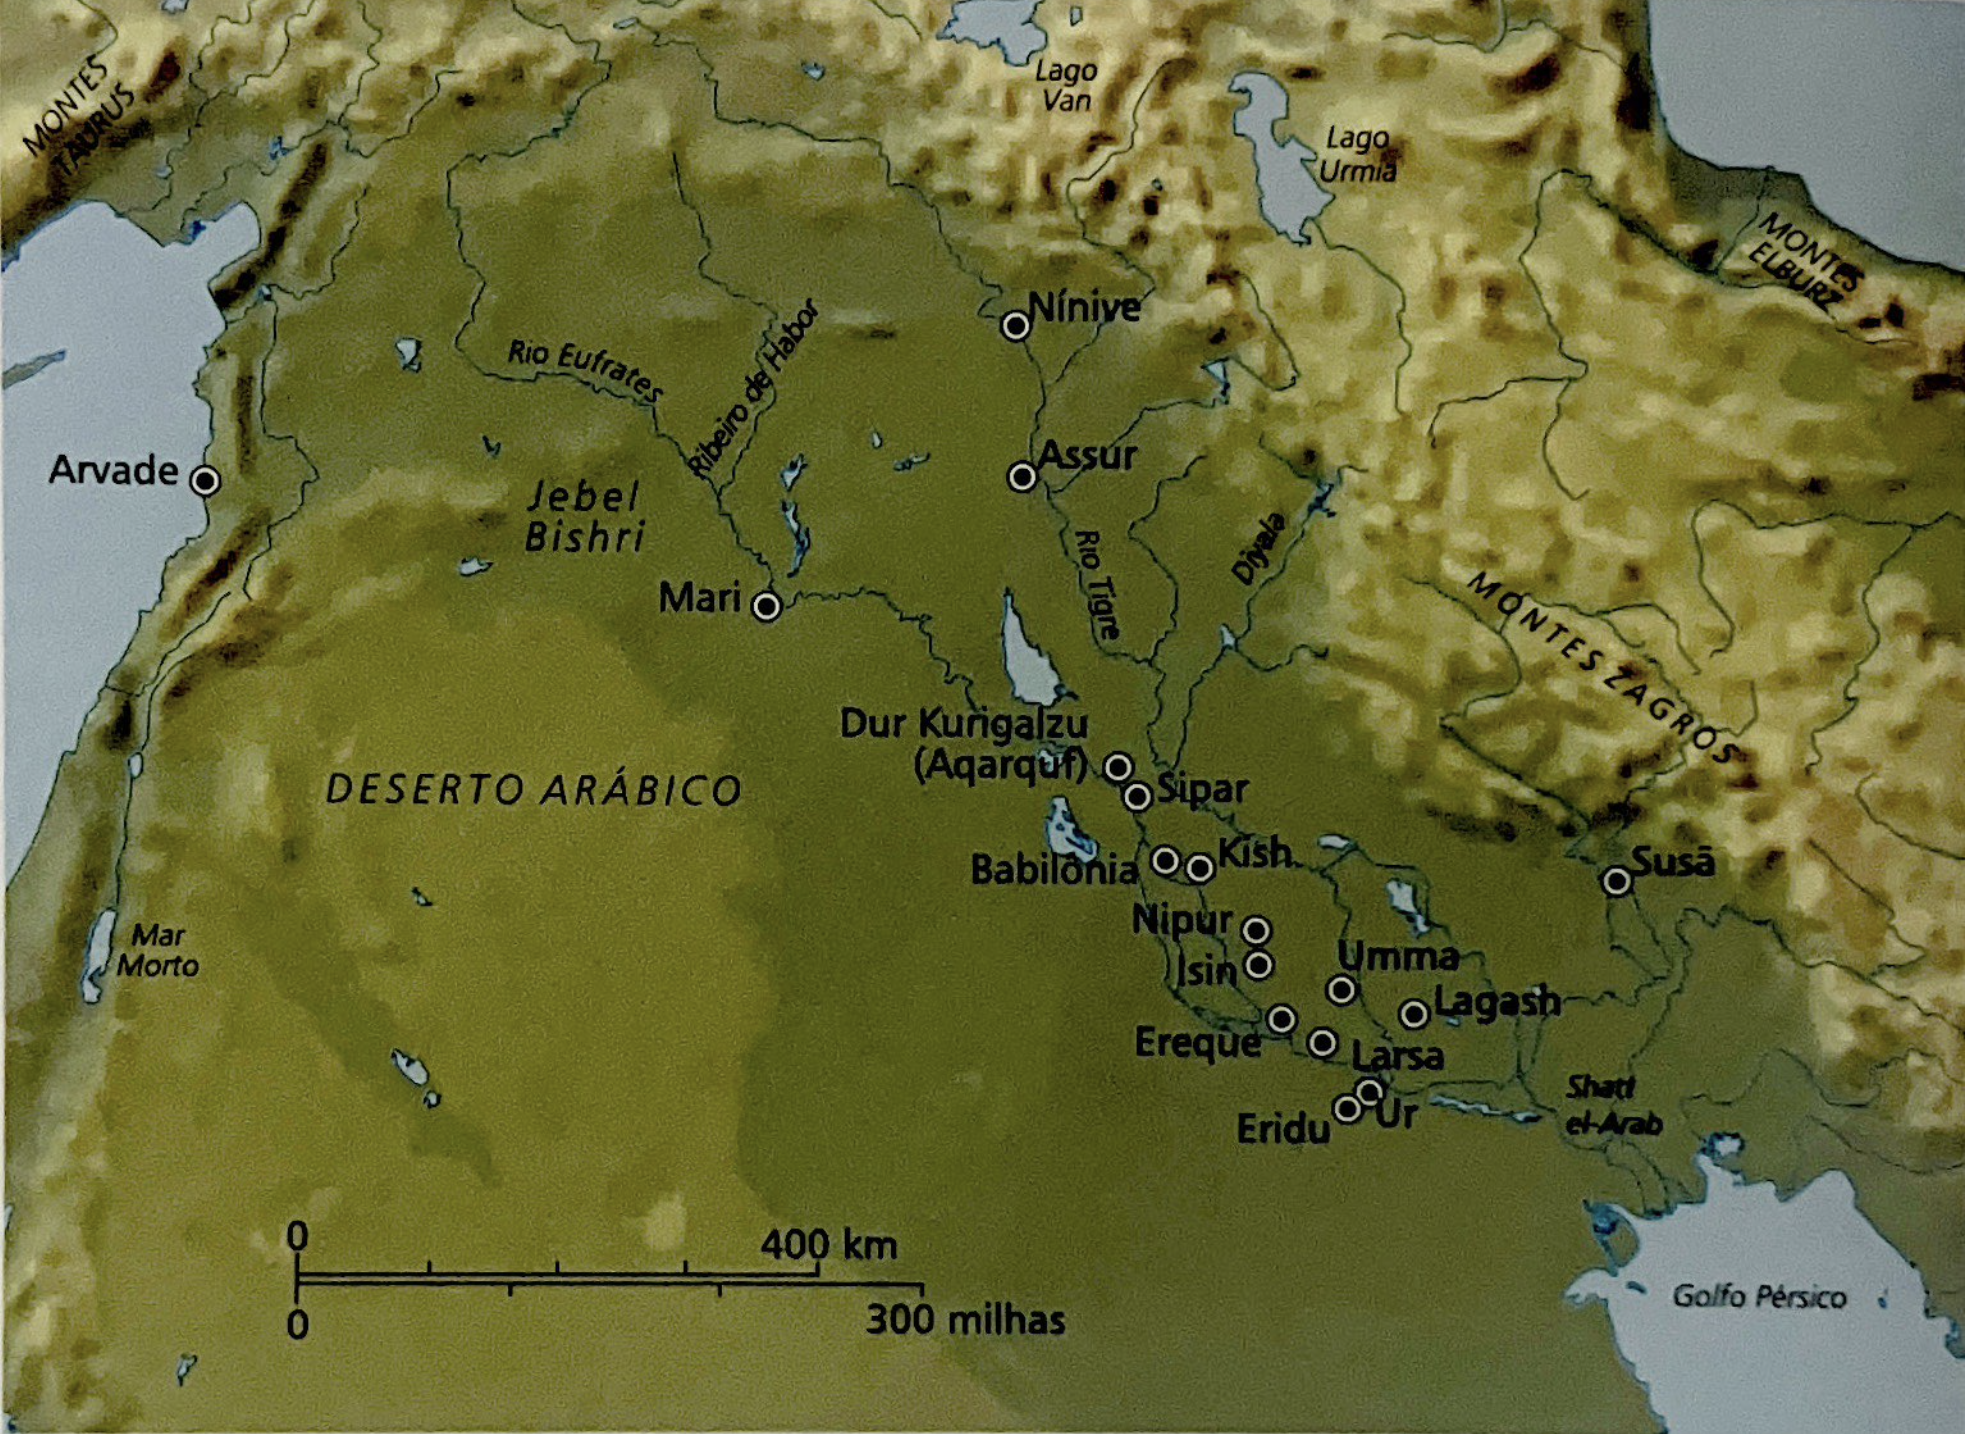 Mesopotâmia da Antiguidade